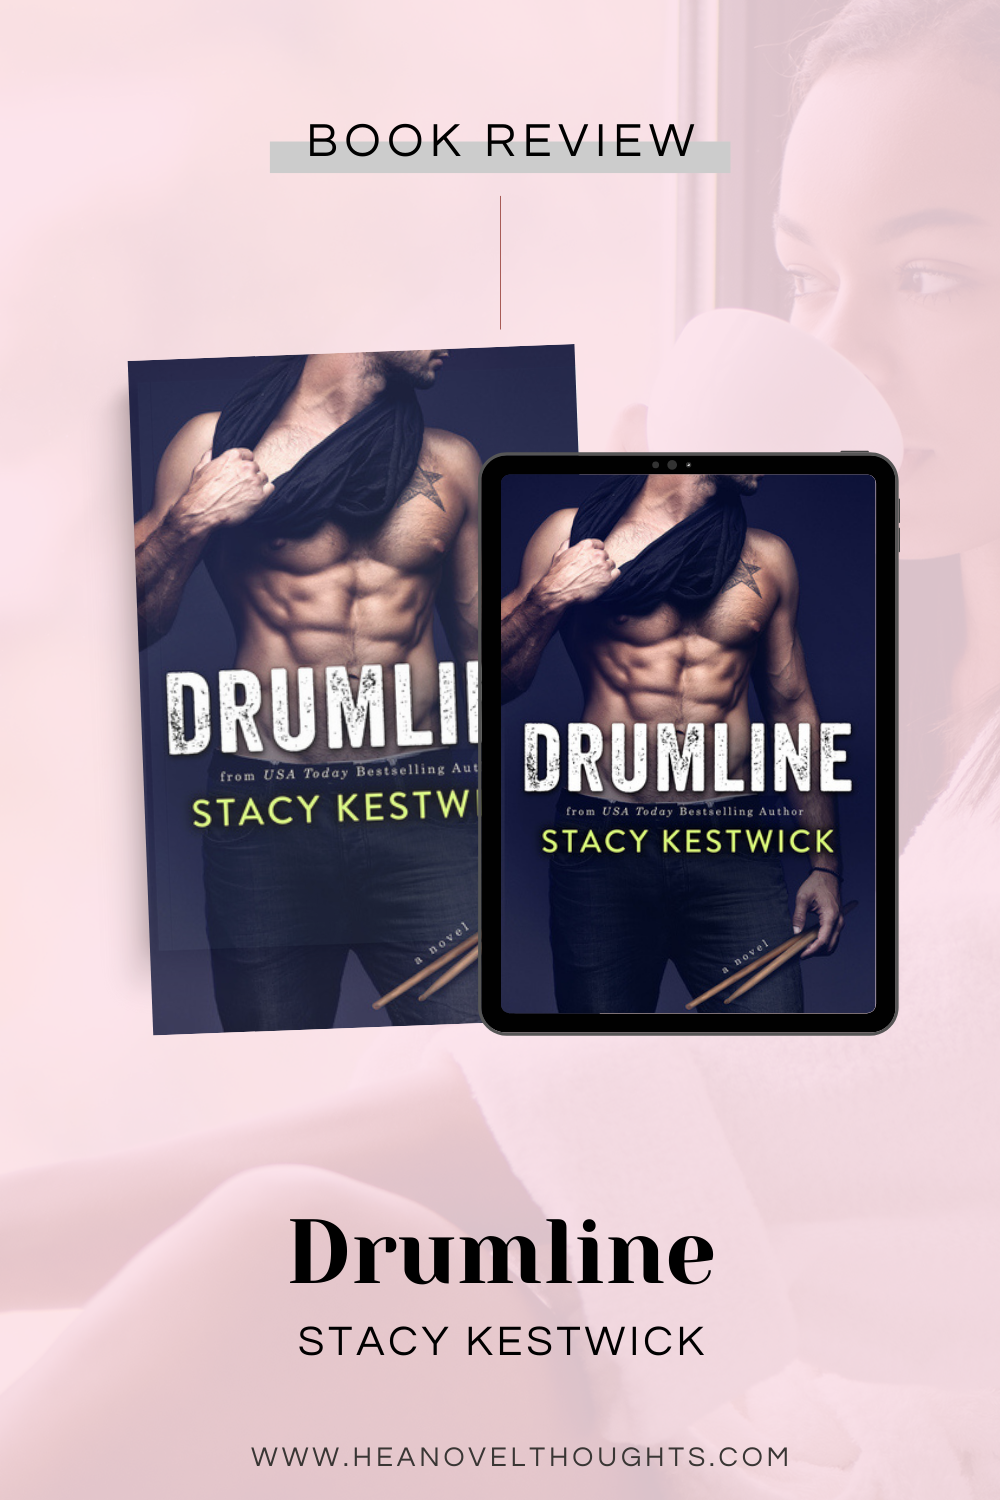 Drumline by Stacy Kestwick